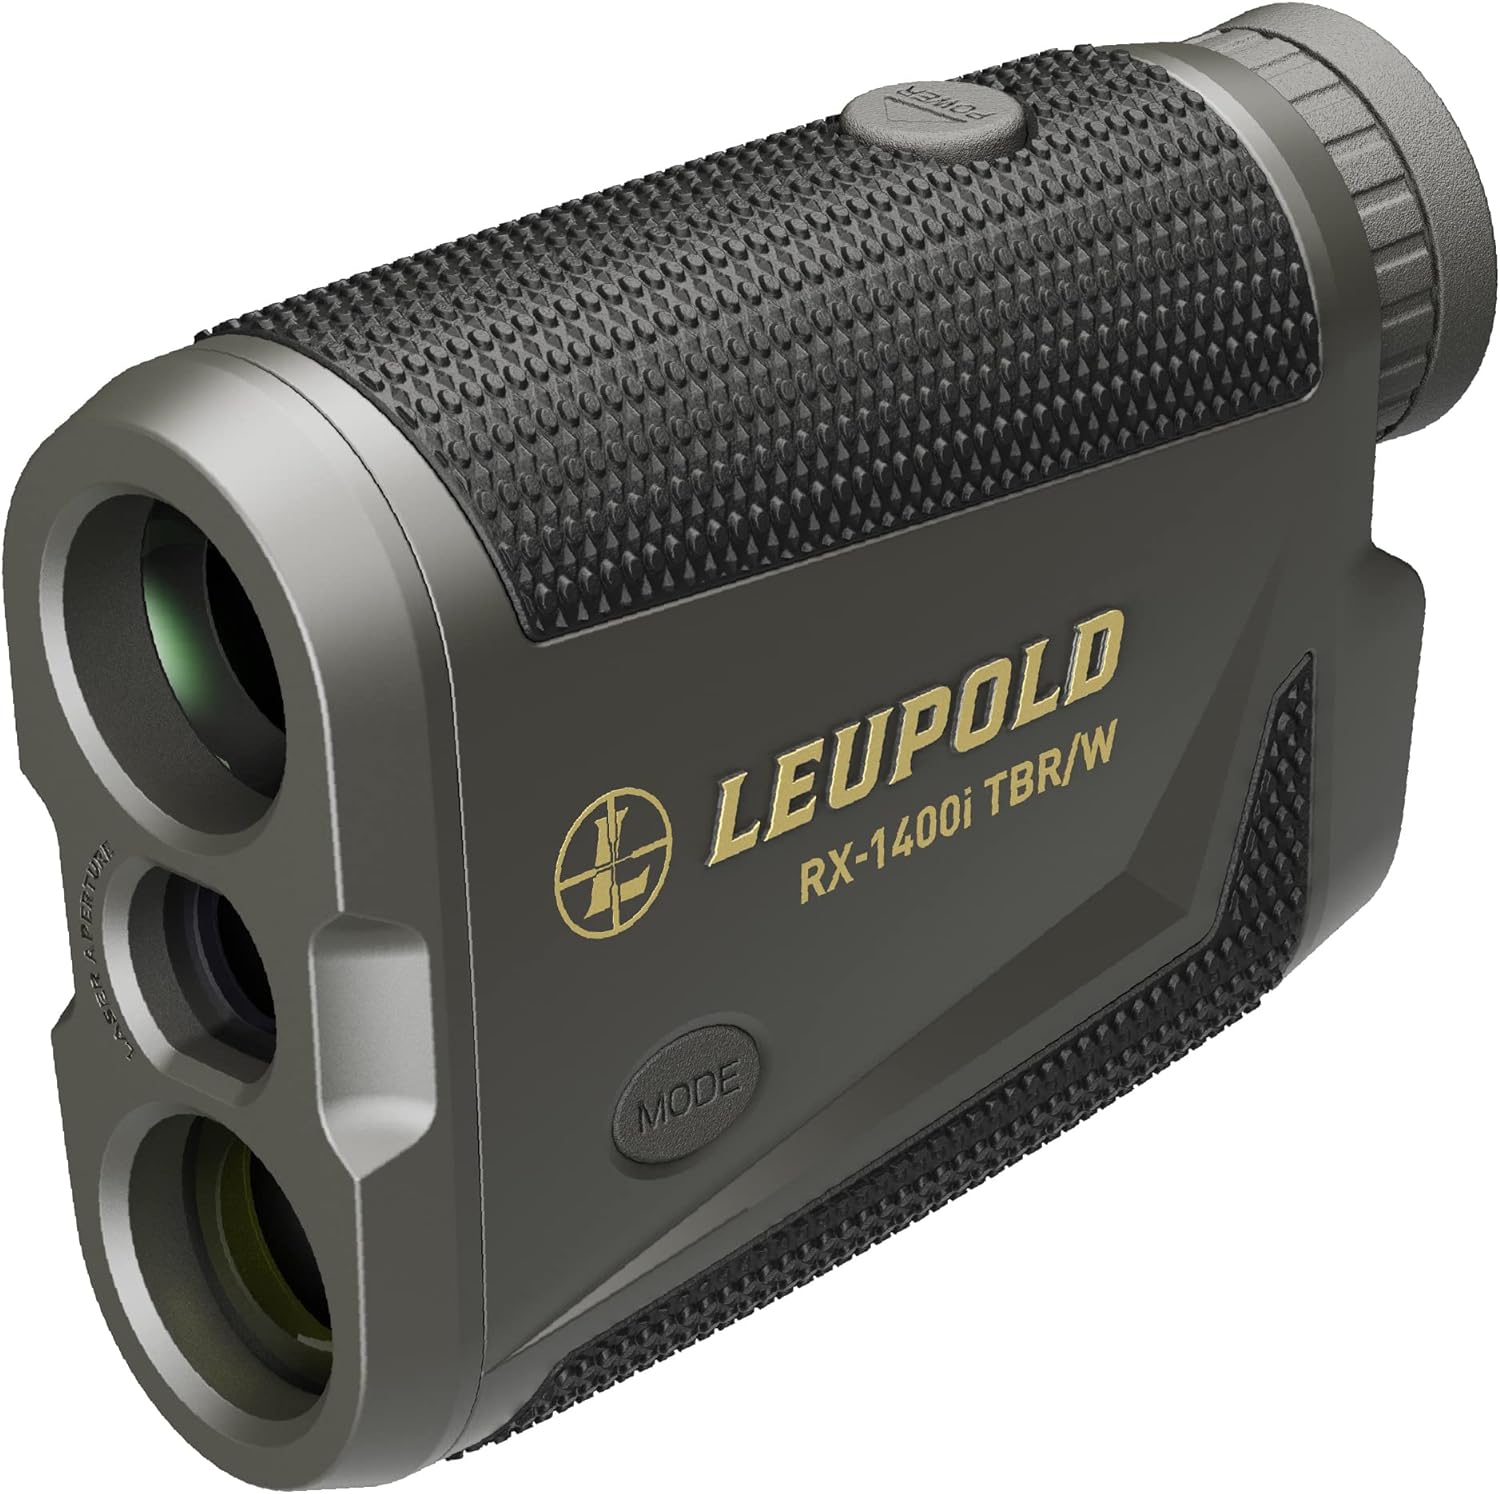 Leupold RX-1400I TBR/W Gen 2 Rangefinder Review